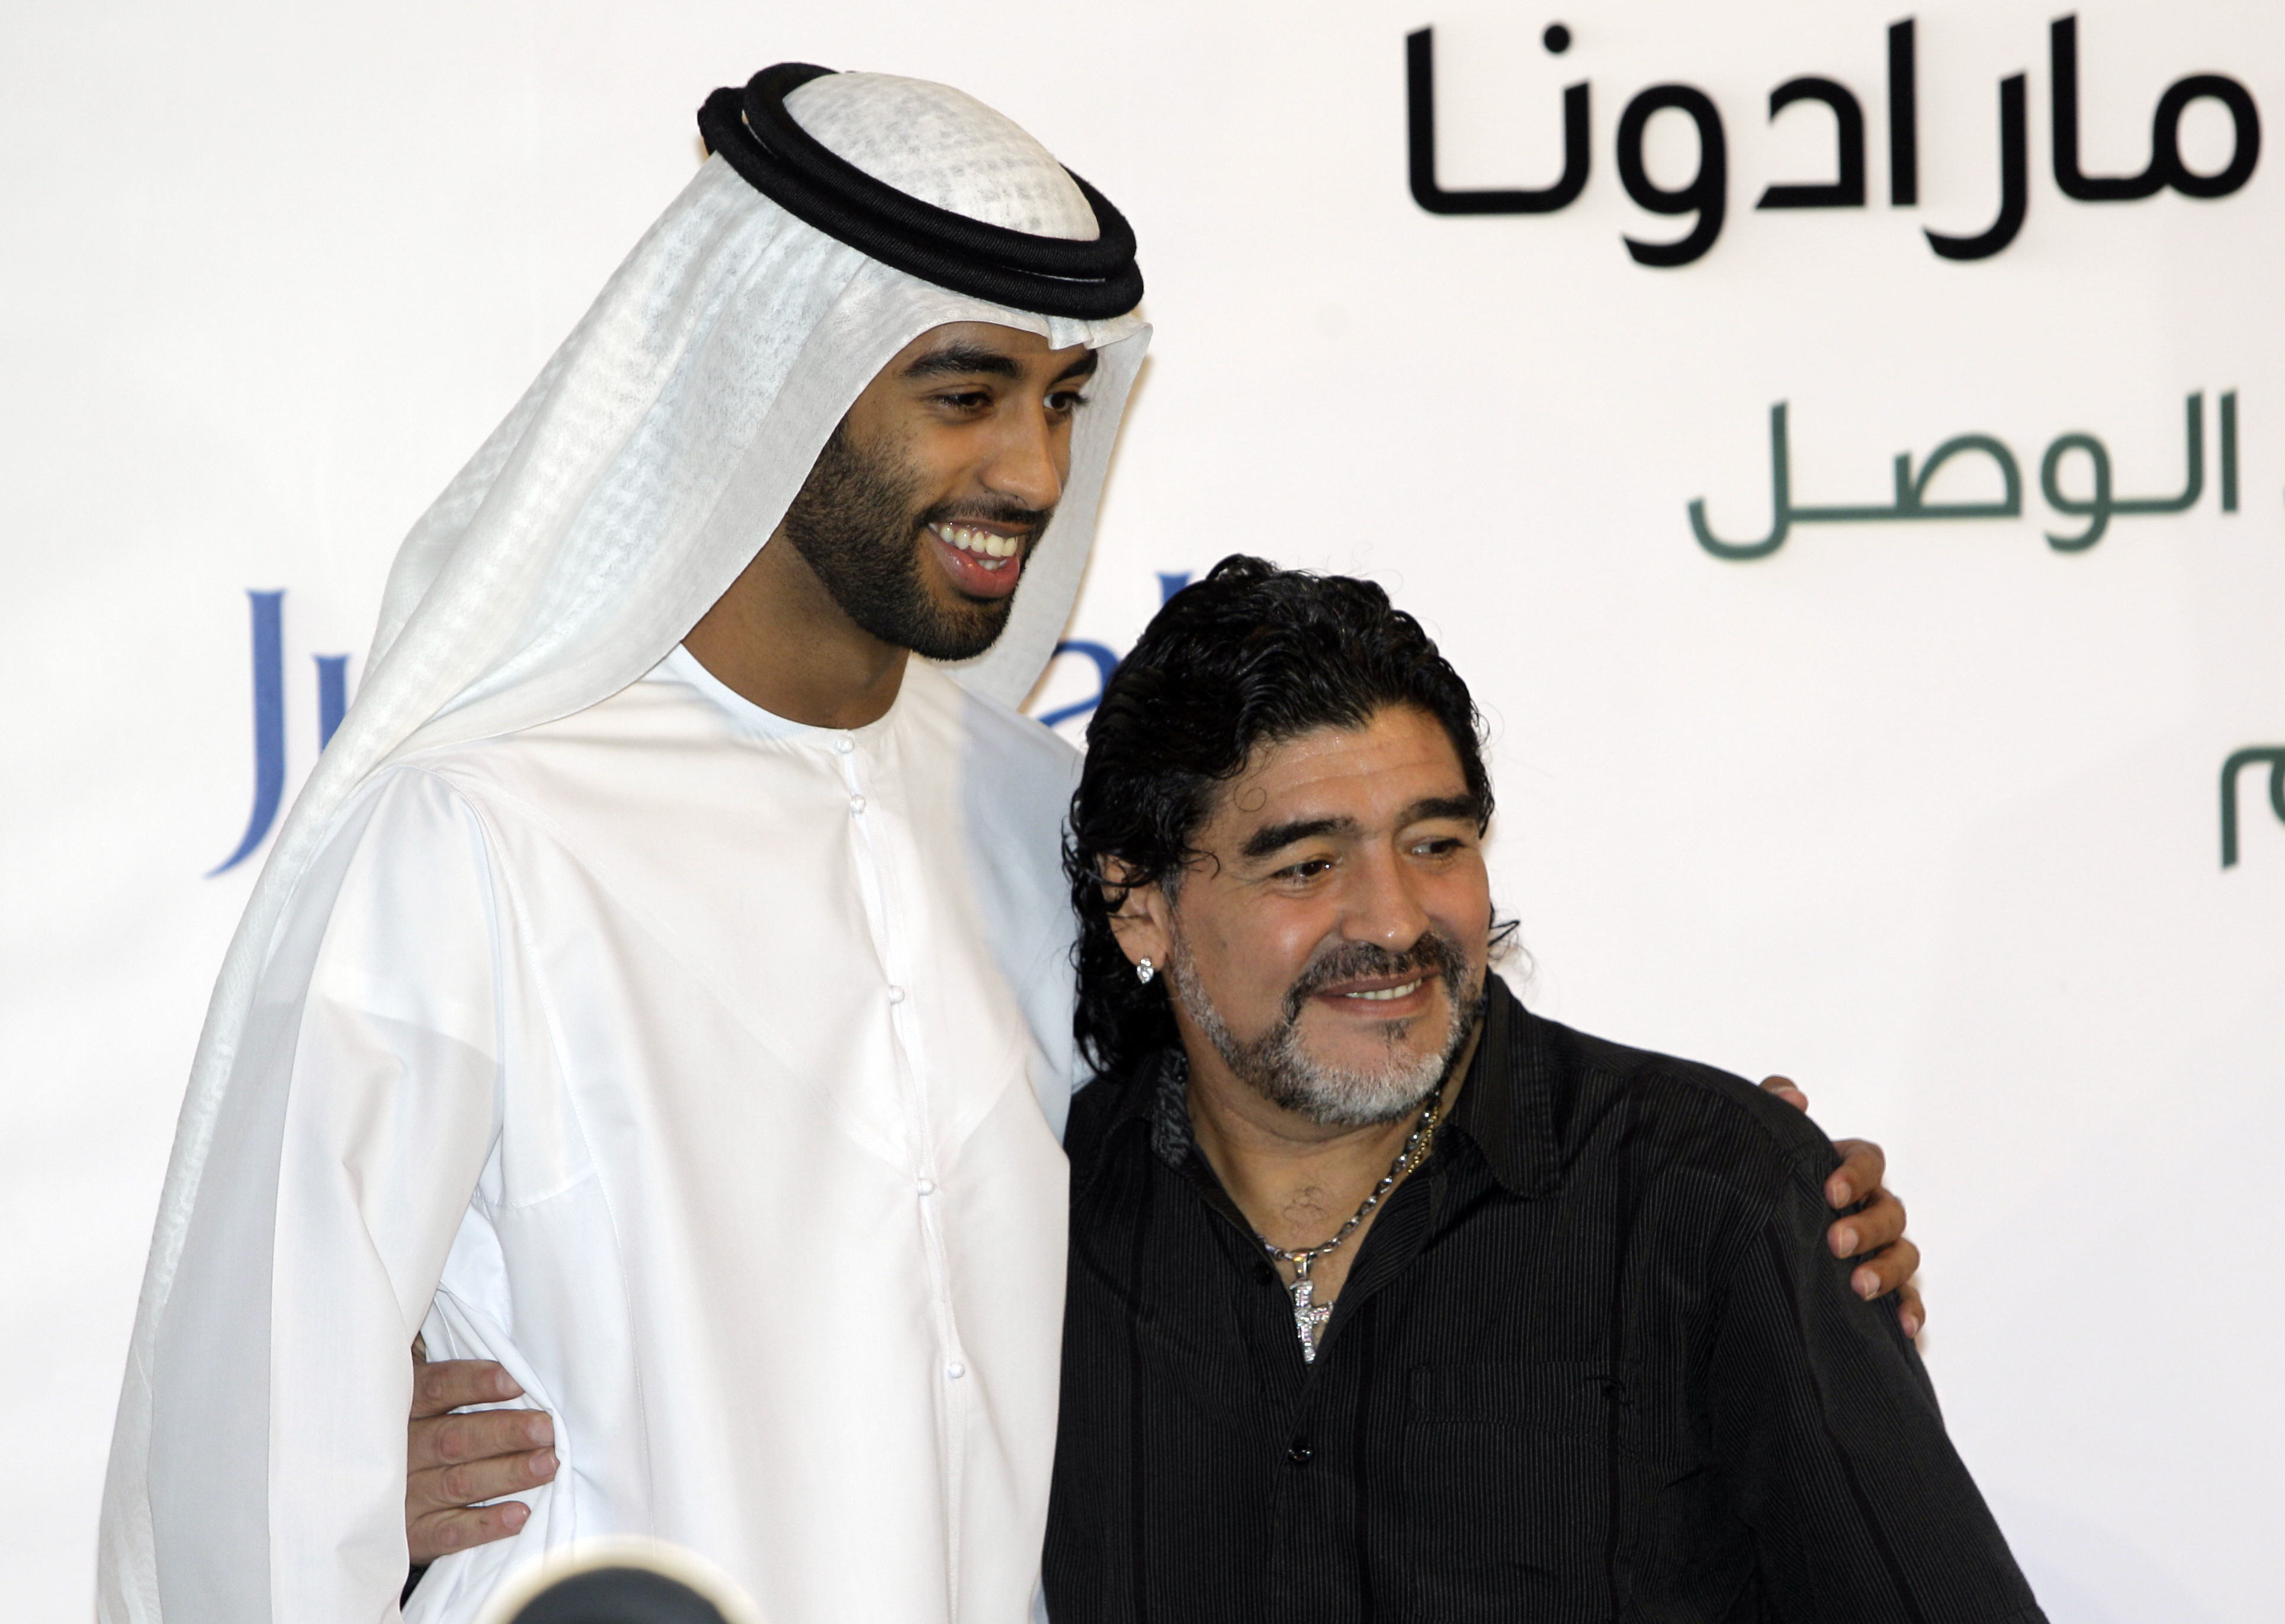 Maradona är för närvarande tränare i klubben Al Wasl från Dubai. Här är han tillsammans med en av klubbens representanter.